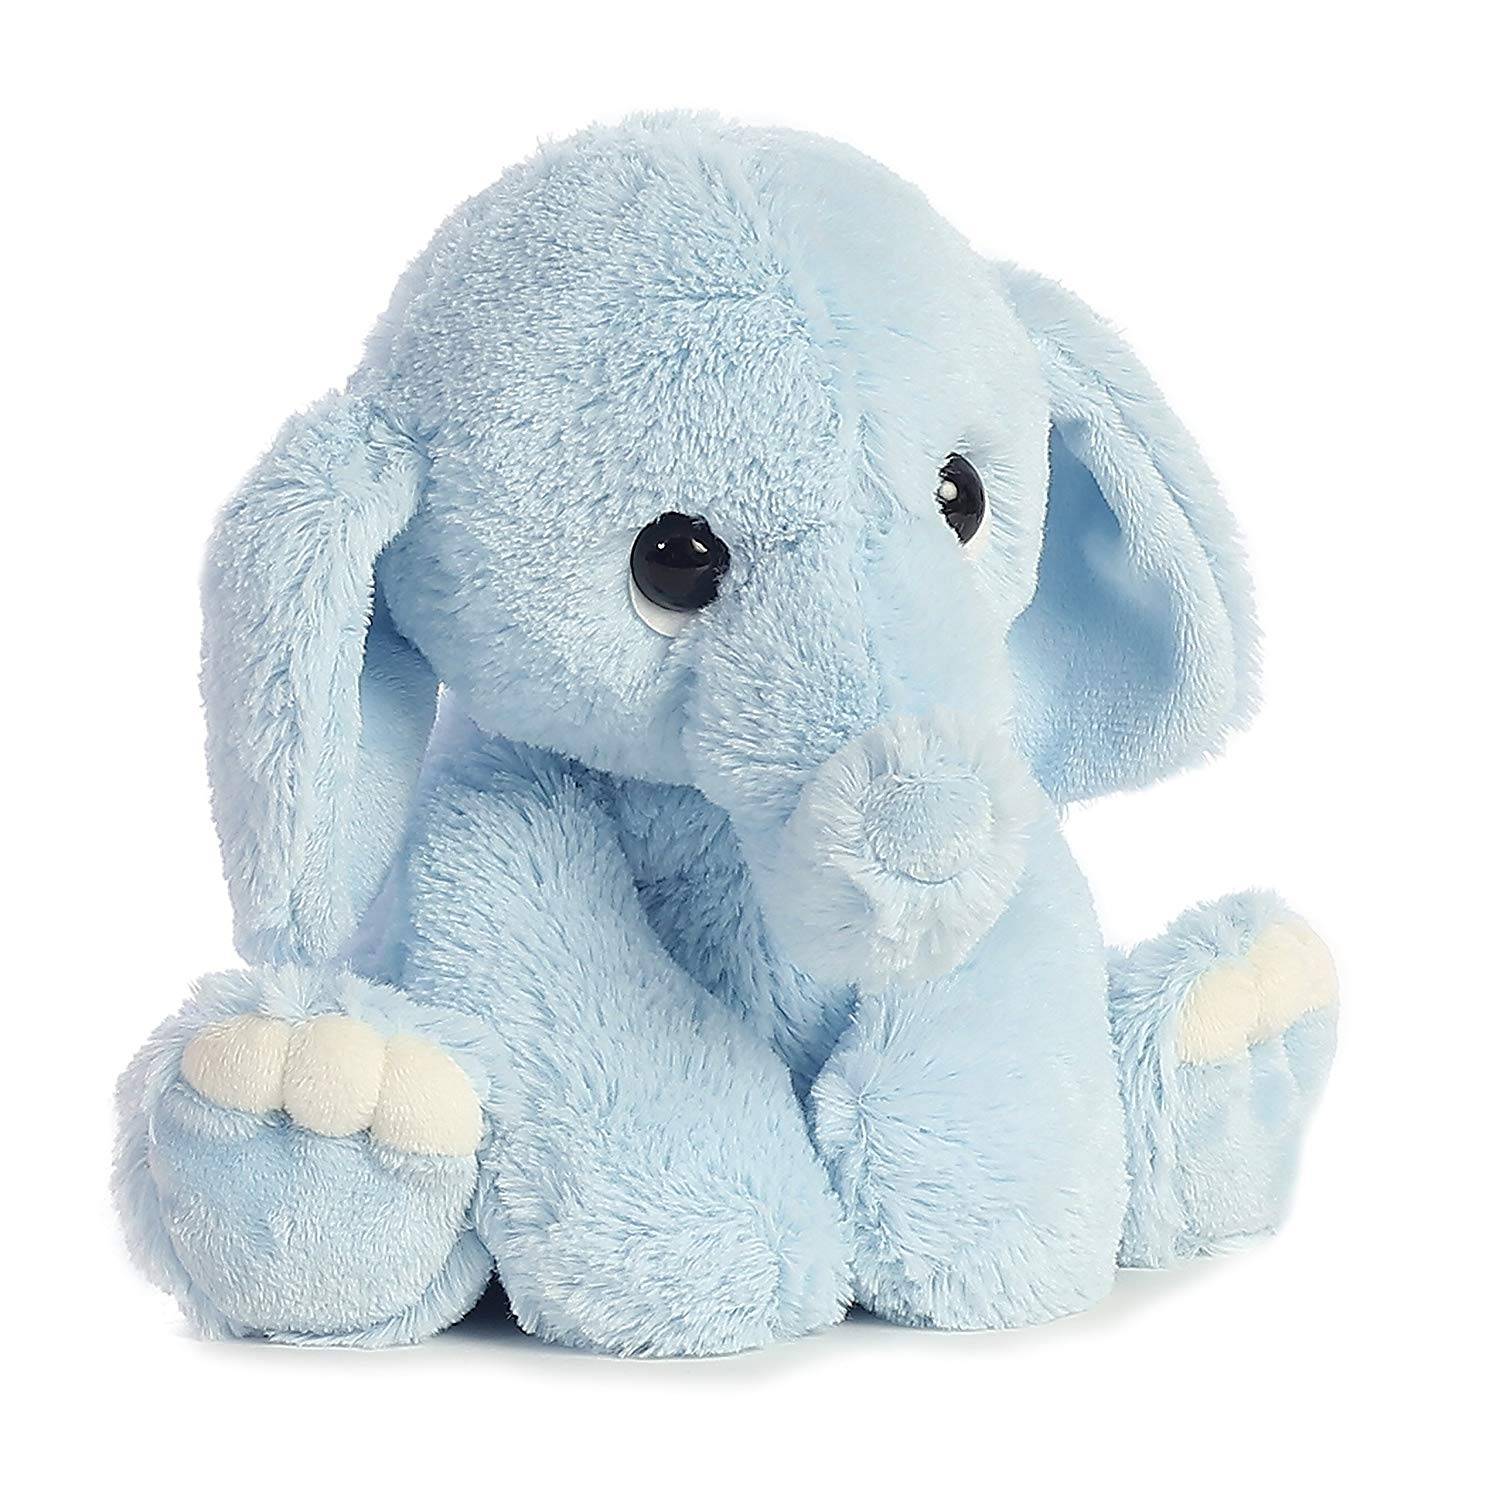 producen un color gris encantador lindo adorable esponjoso relleno animal de juguete elefante juguetes de peluche